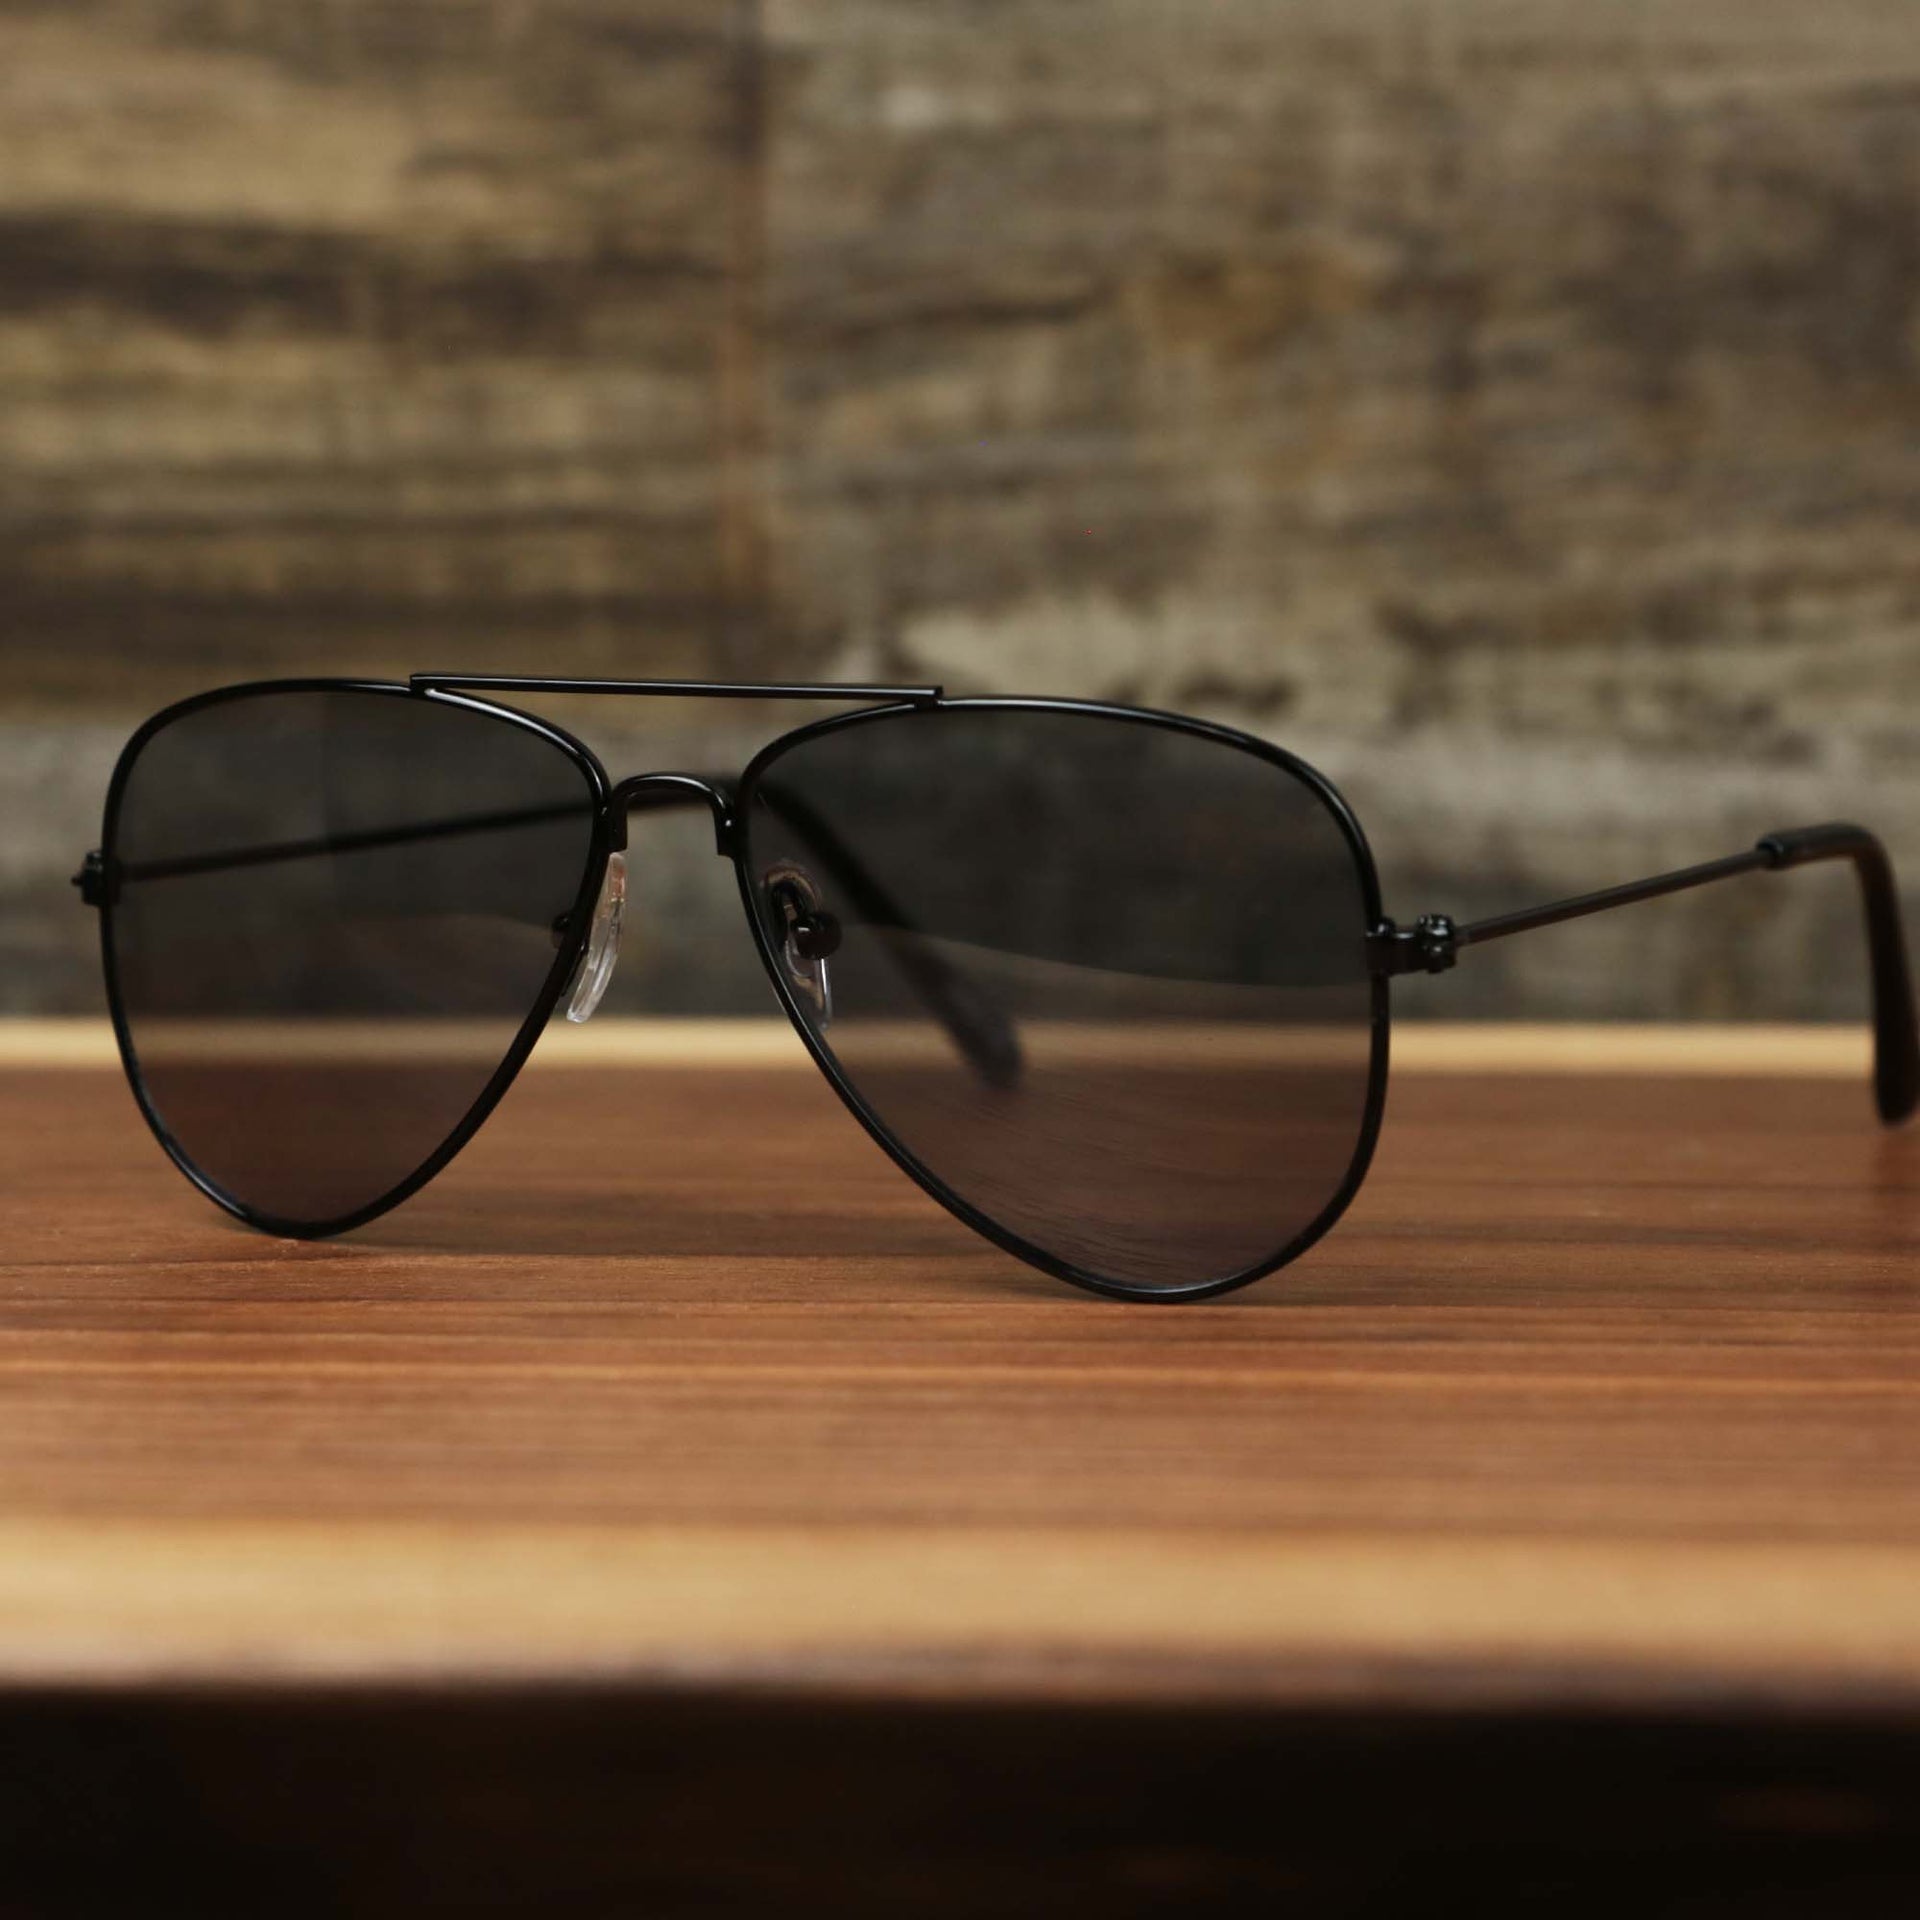 The Kid’s Aviator Frame Black Lens Sunglasses with Black Frame